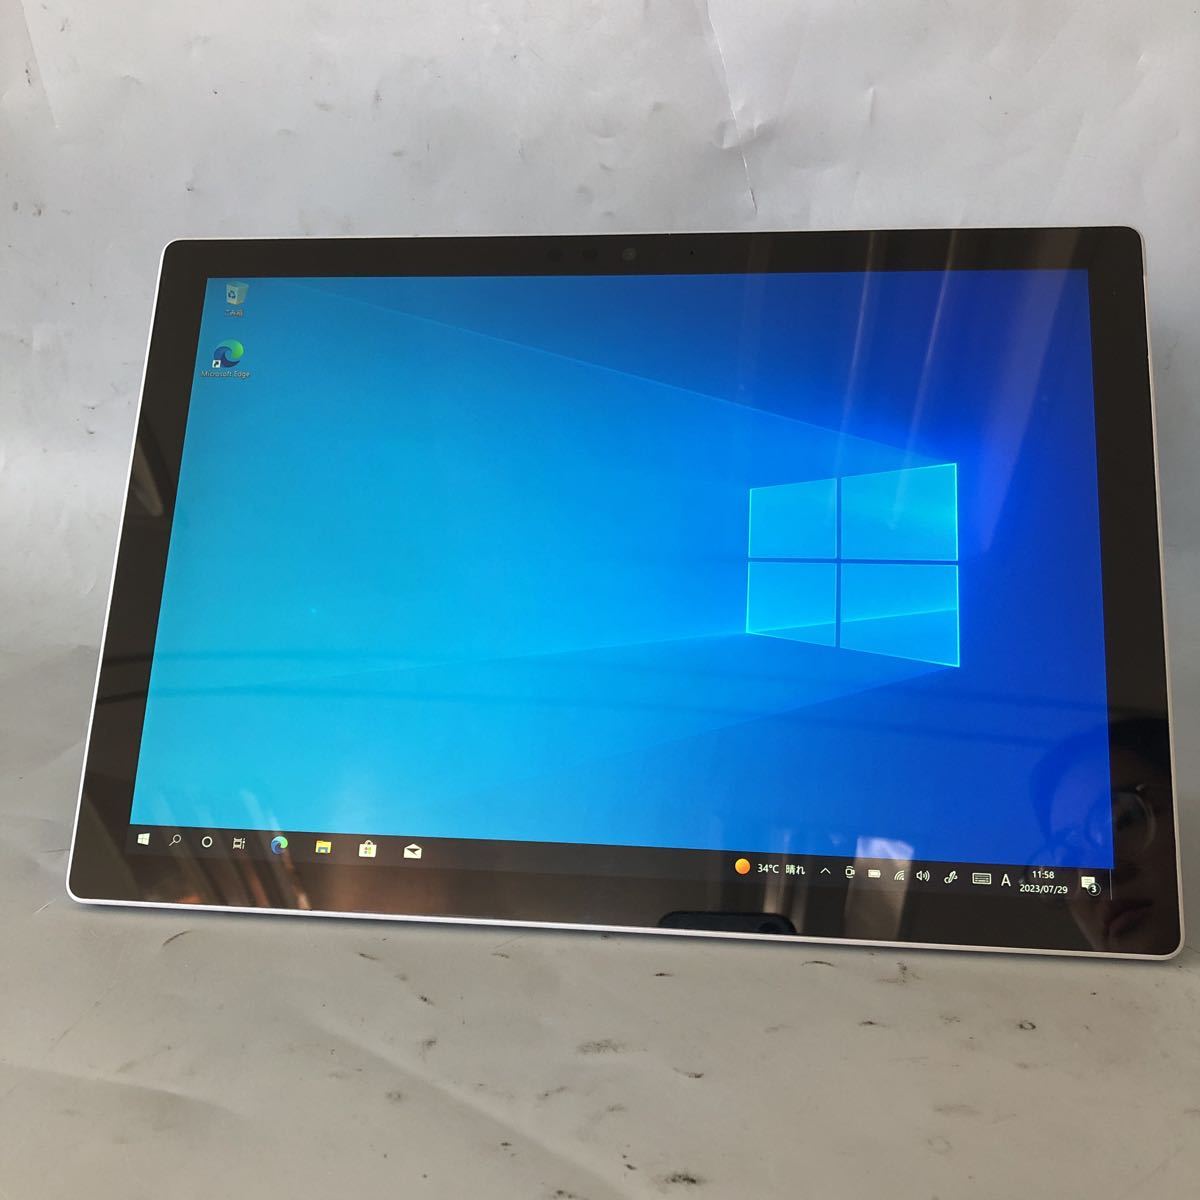 JXNT2908 / Microsoft Surface Pro 5 1807 /Intel Core i5-7300U 2.60